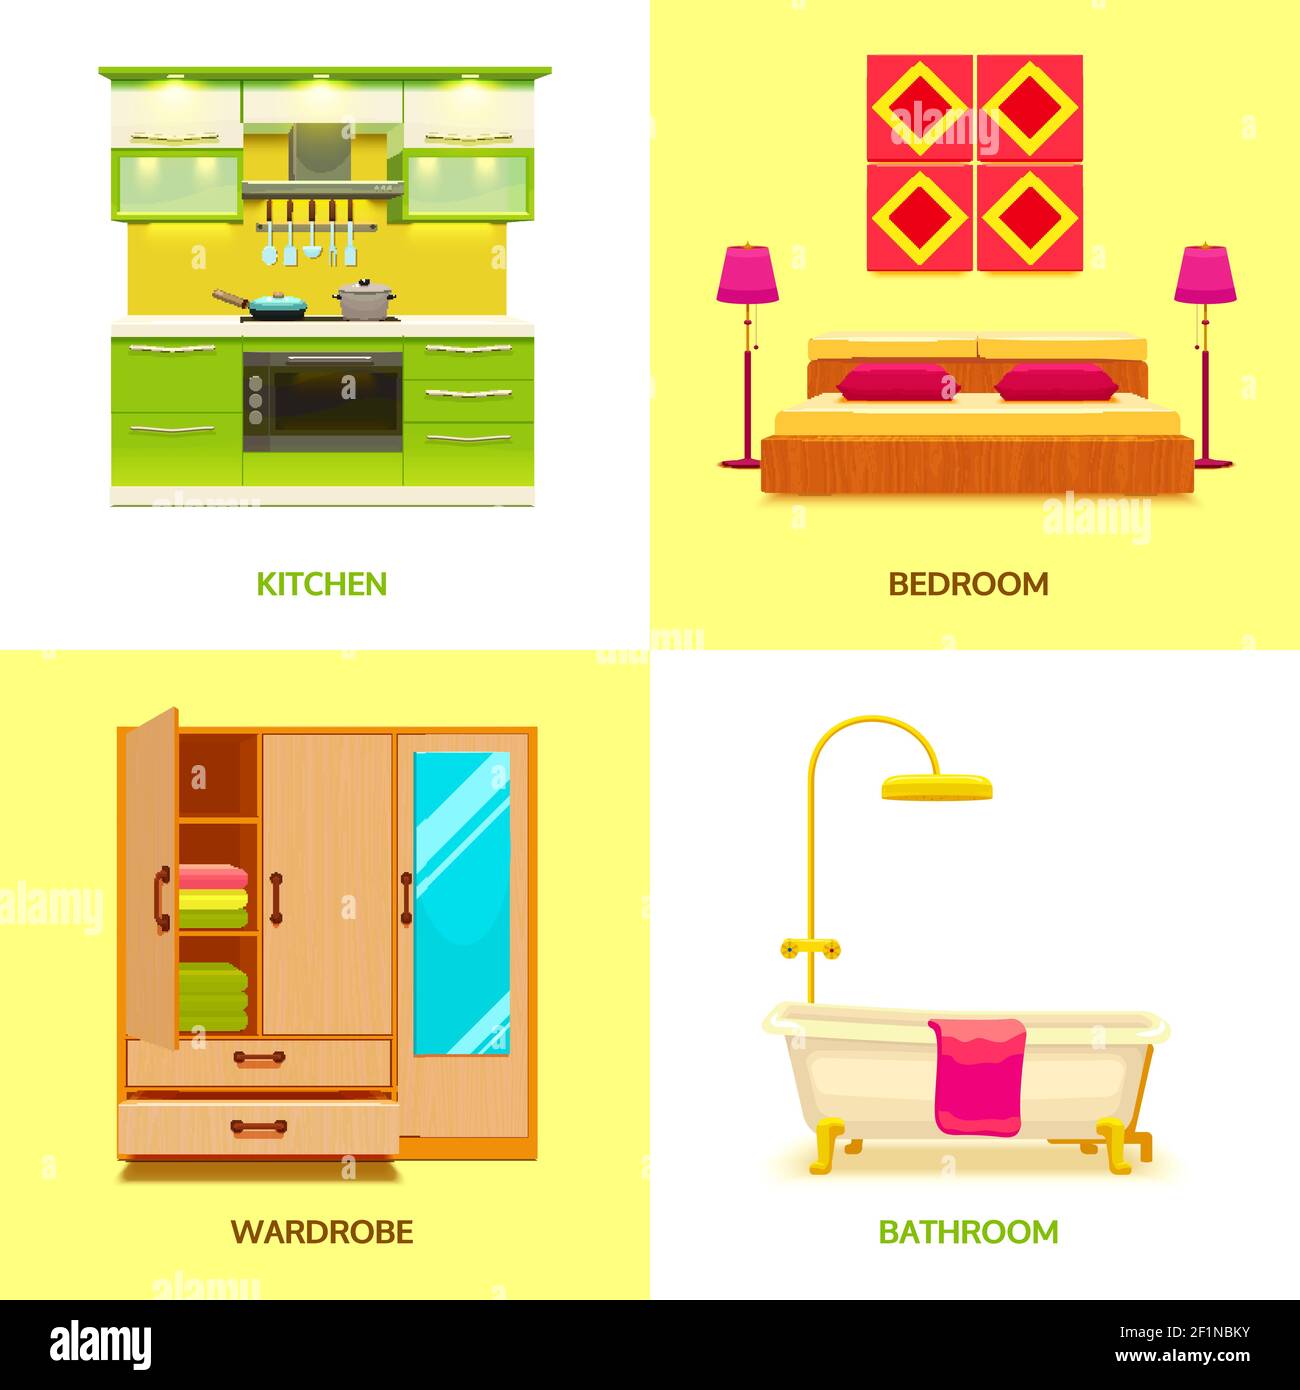 Composition carrée de style dessin animé isolé de quatre éléments intérieurs vivants dans la cuisine, chambre et salle de bains, illustration vectorielle plate Illustration de Vecteur